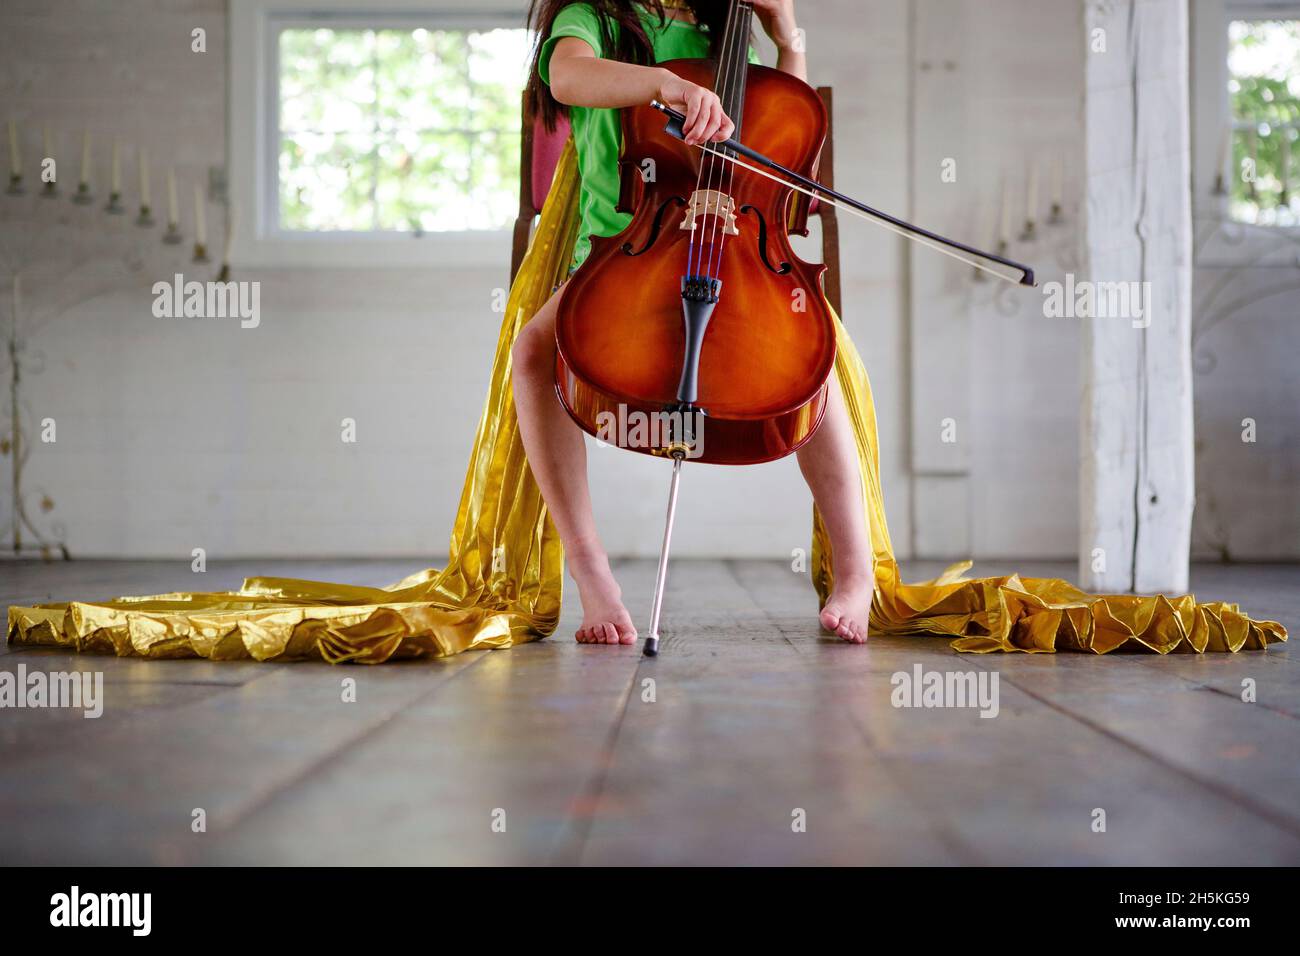 Metà inferiore di bambino a piedi nudi in oro mantello giocando violoncello in camera vuota Foto Stock